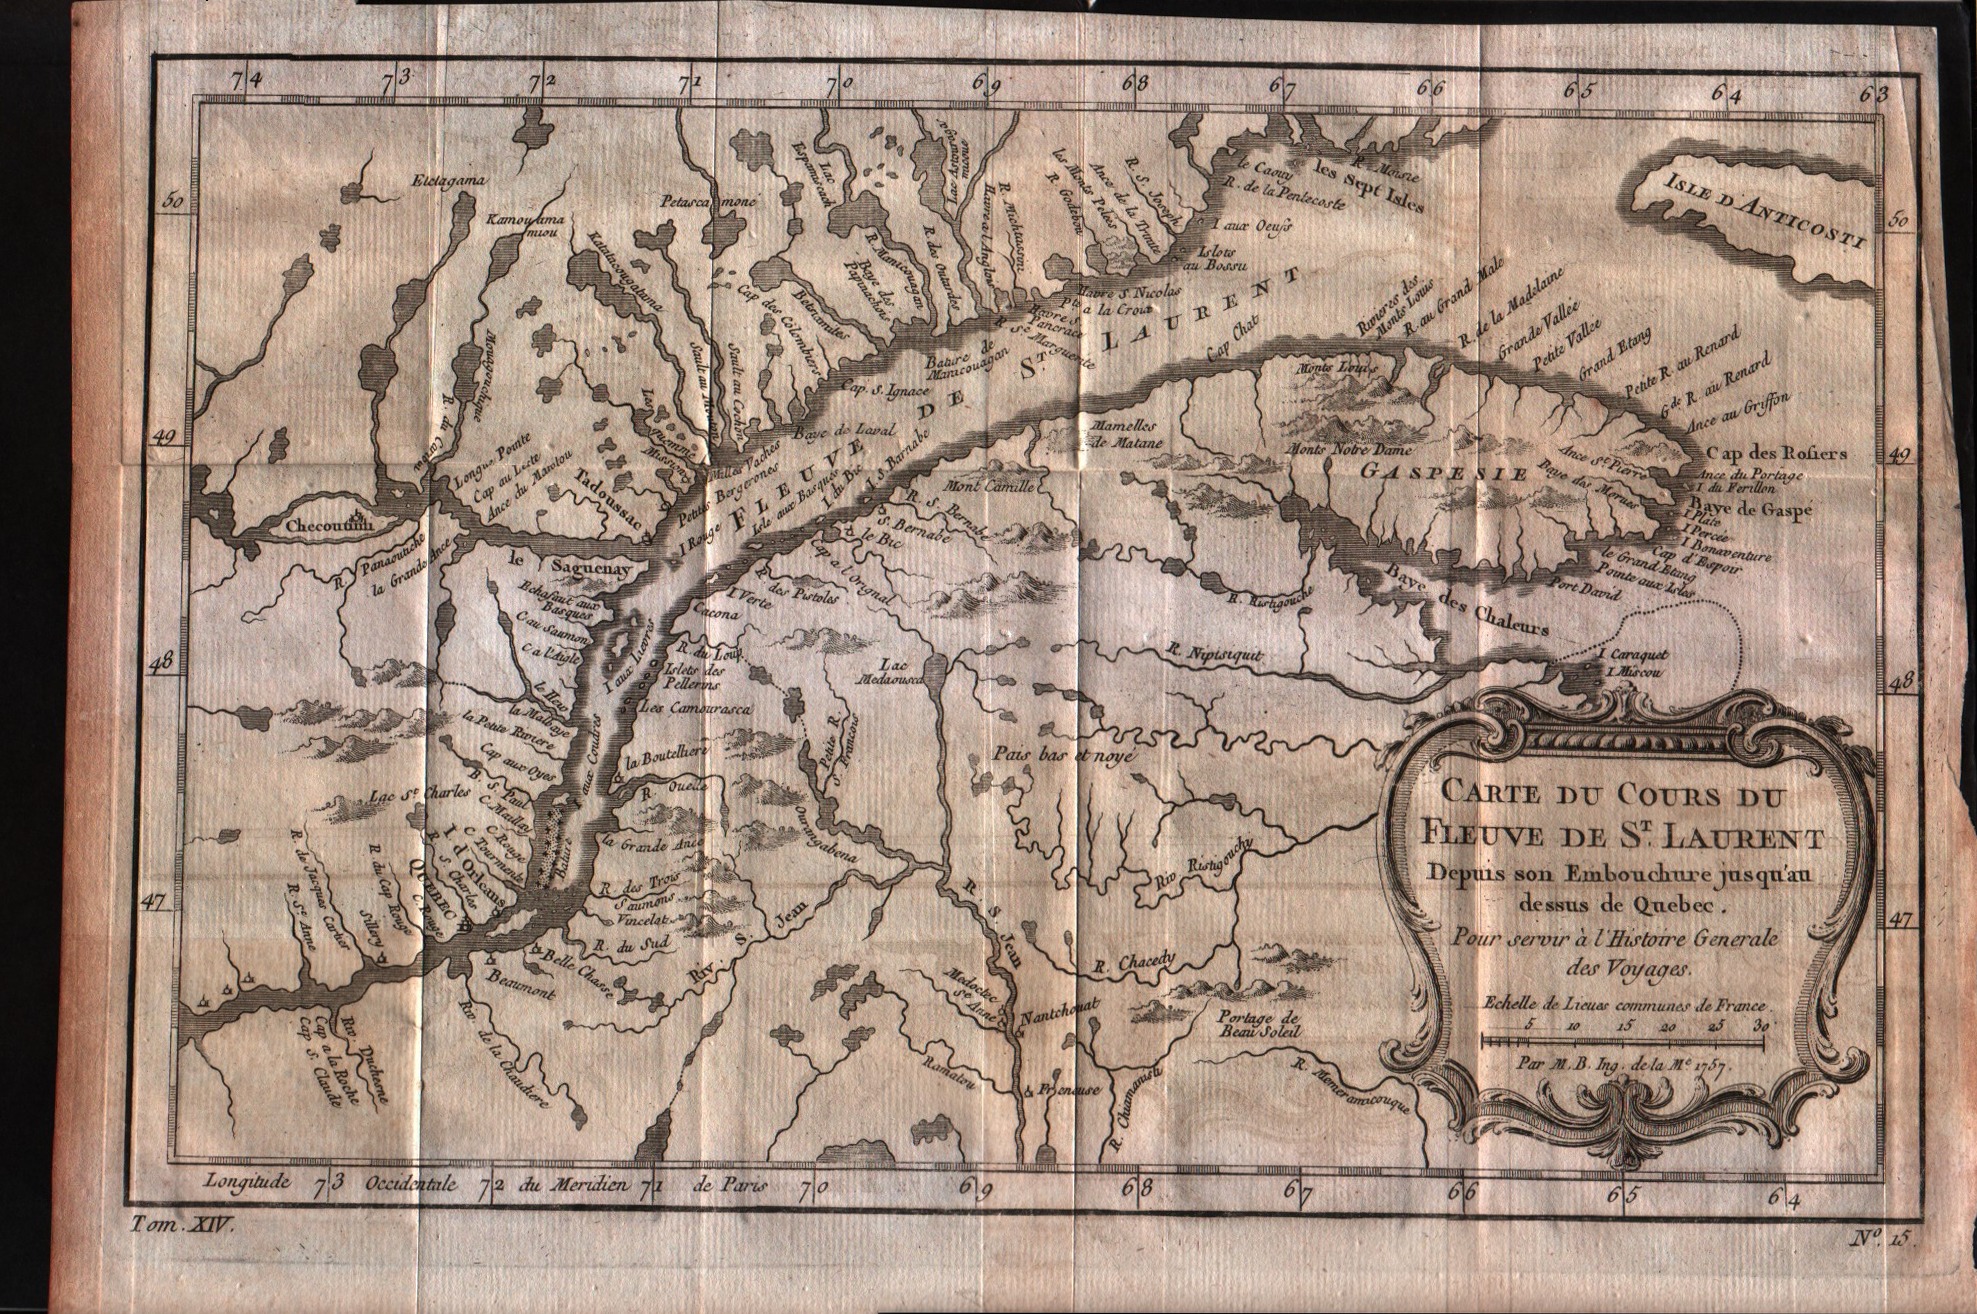 Carte du cours du Fleuve de S.Laurent depuis son embouchure jusqu